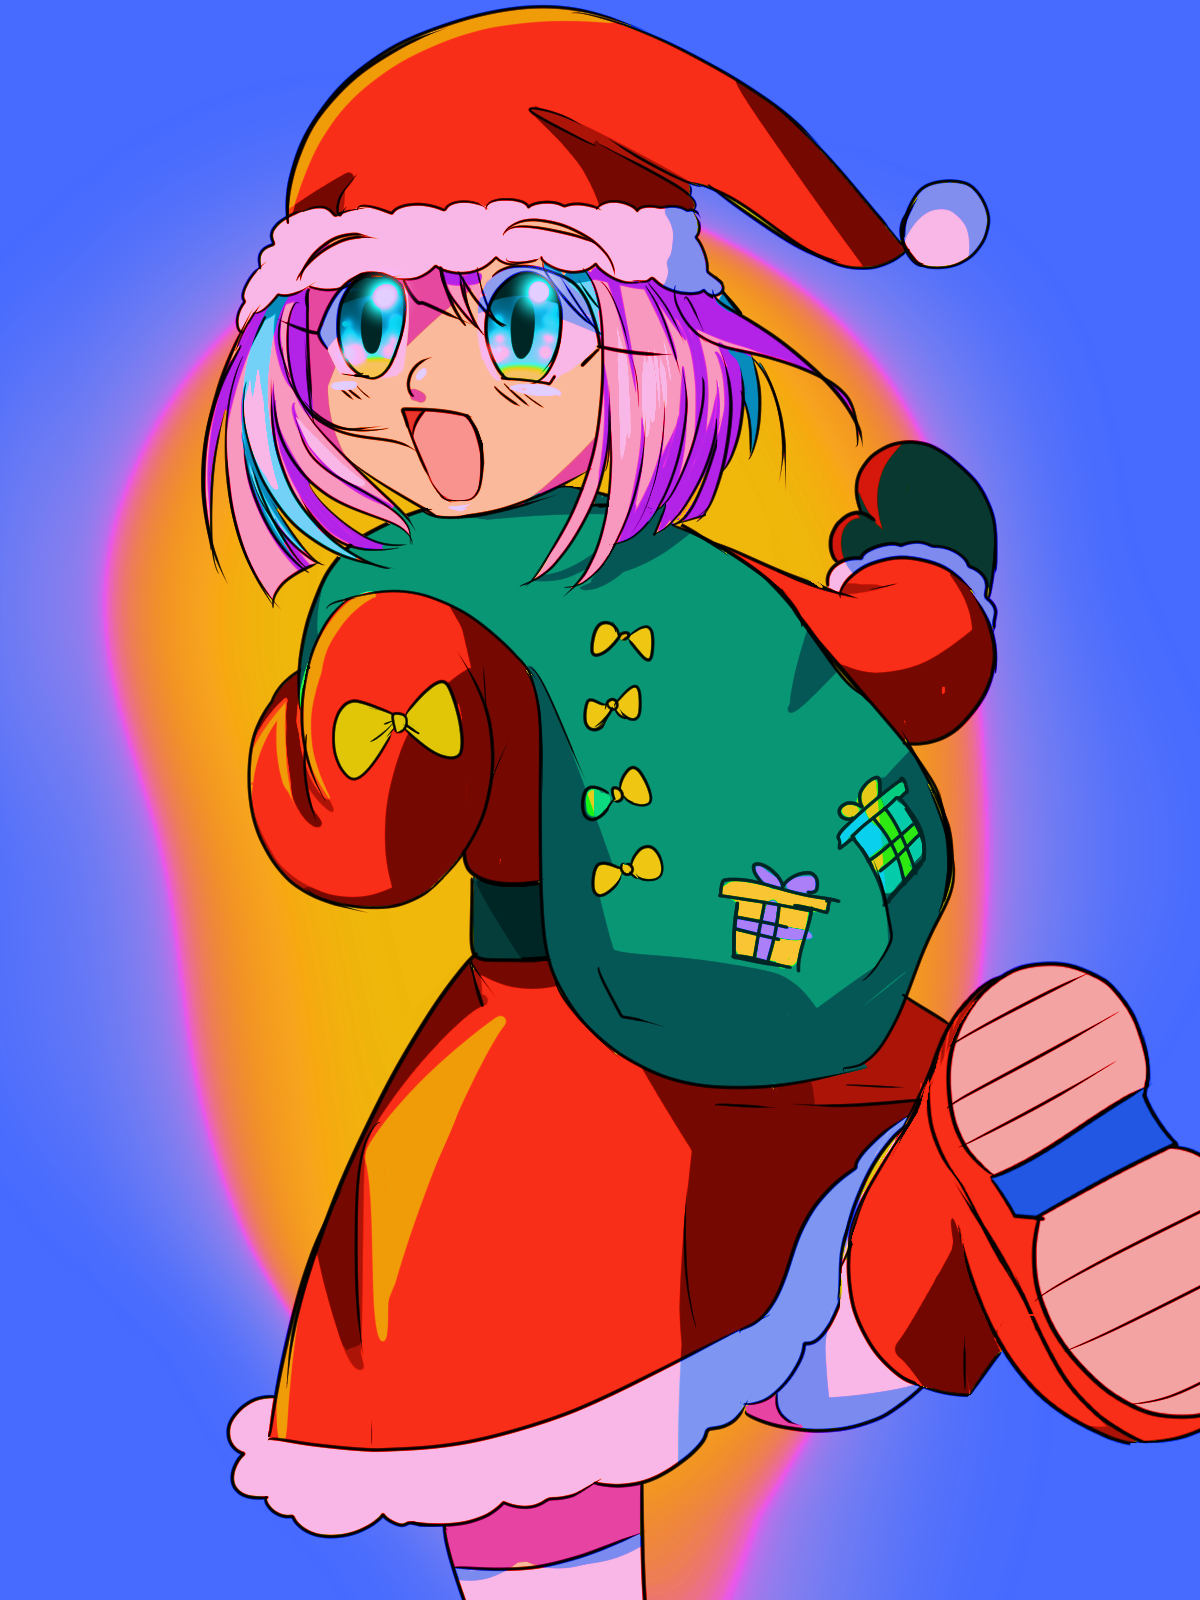 Mabel as Santa Claus